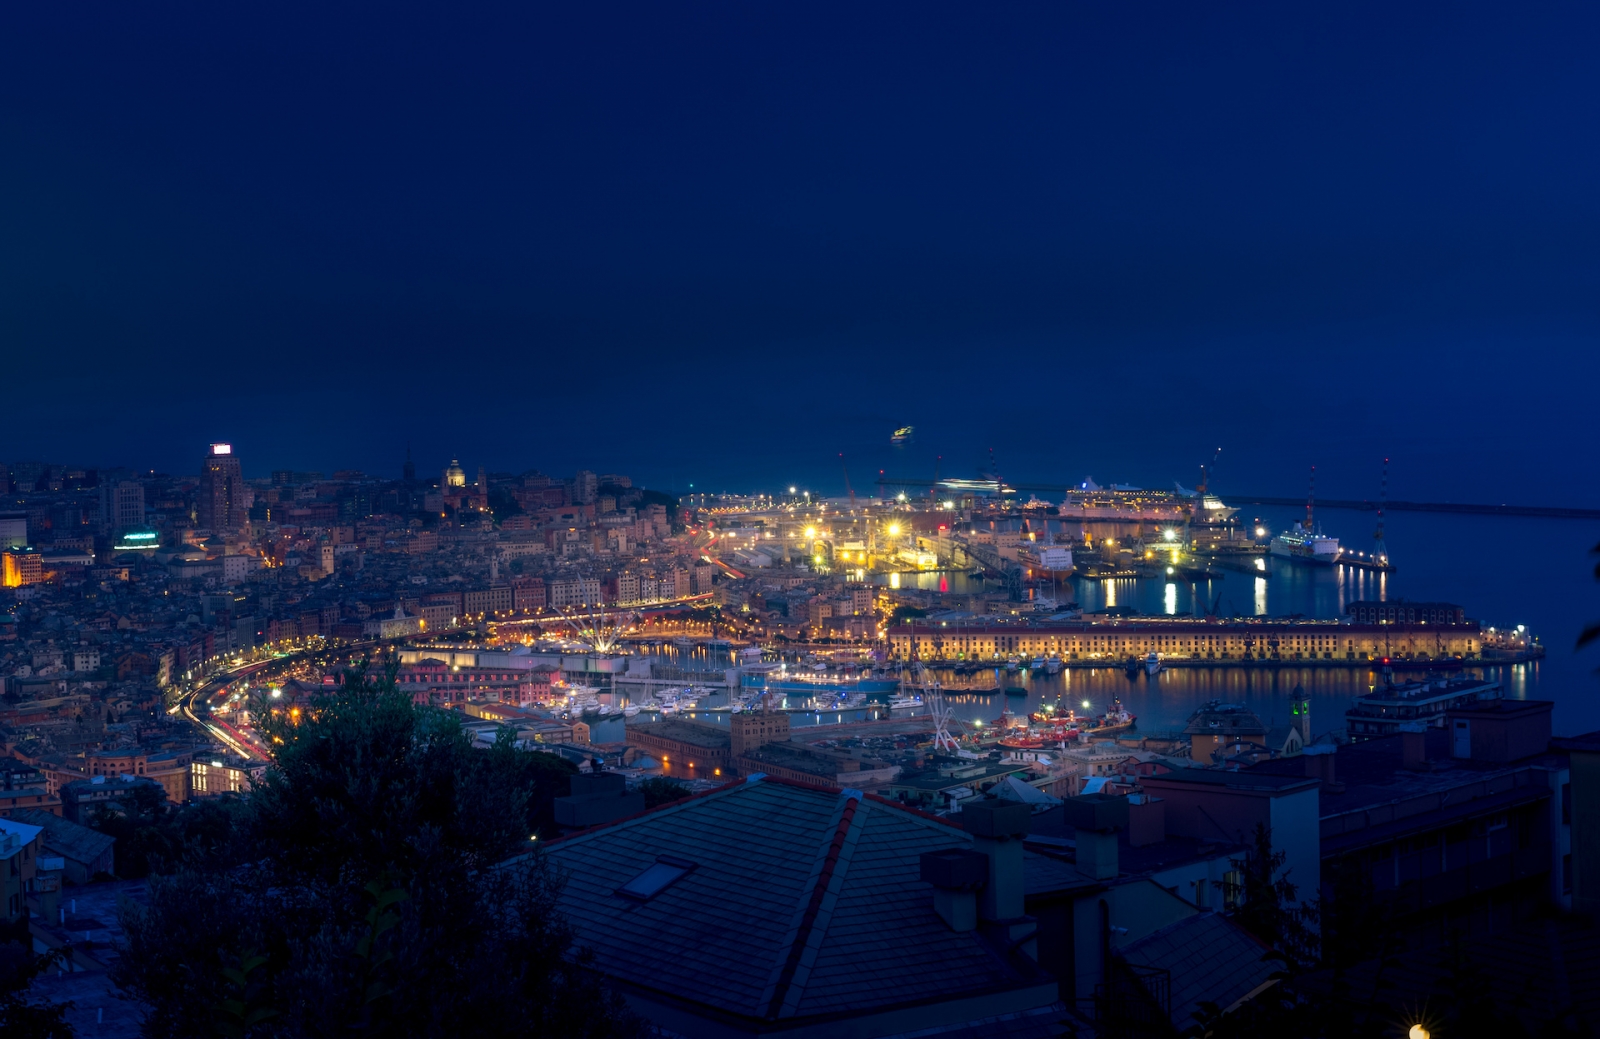 Paisaje urbano nocturno de Génova con el puerto antiguo, cruceros, grúas marinas y portuarias al fondo